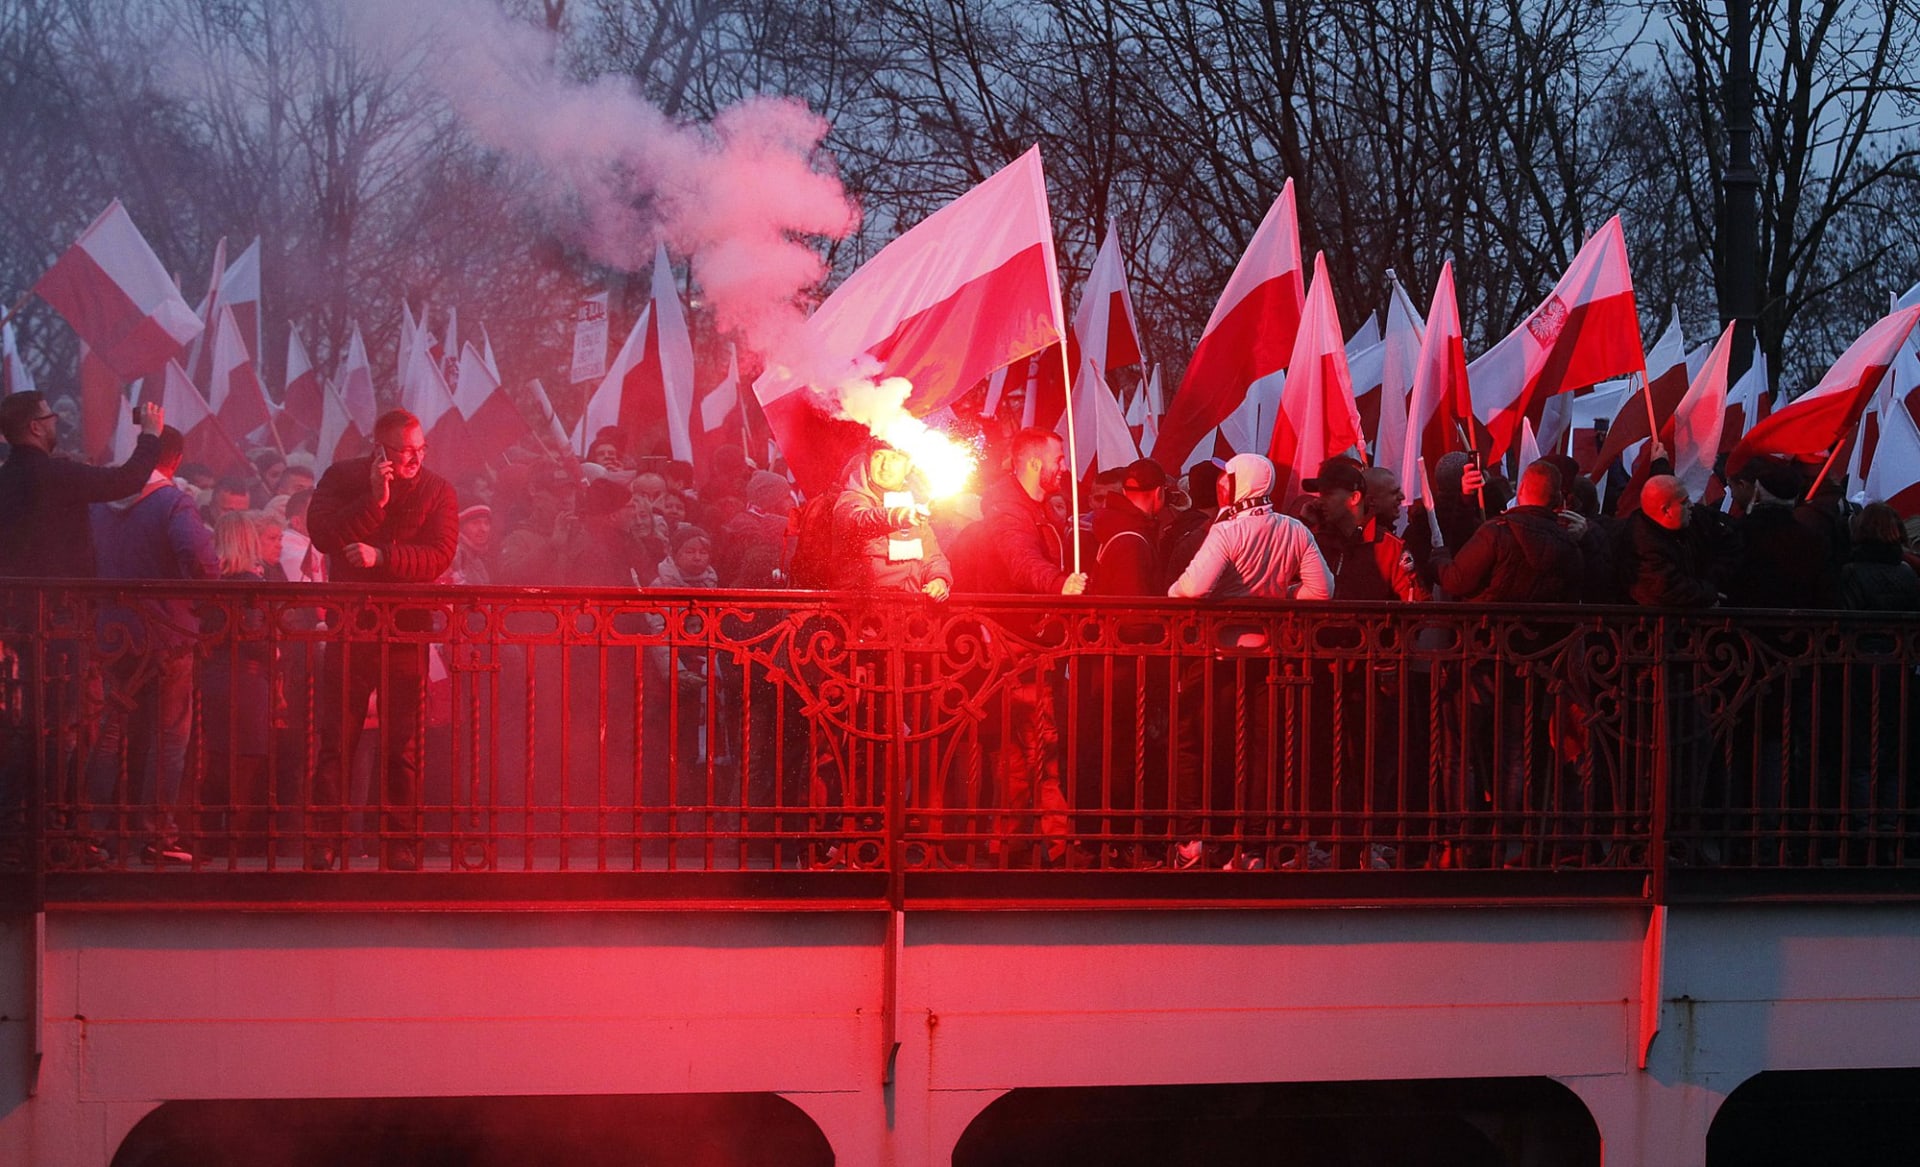 účastníci průvodu s polskými vlajkami a světlicemi